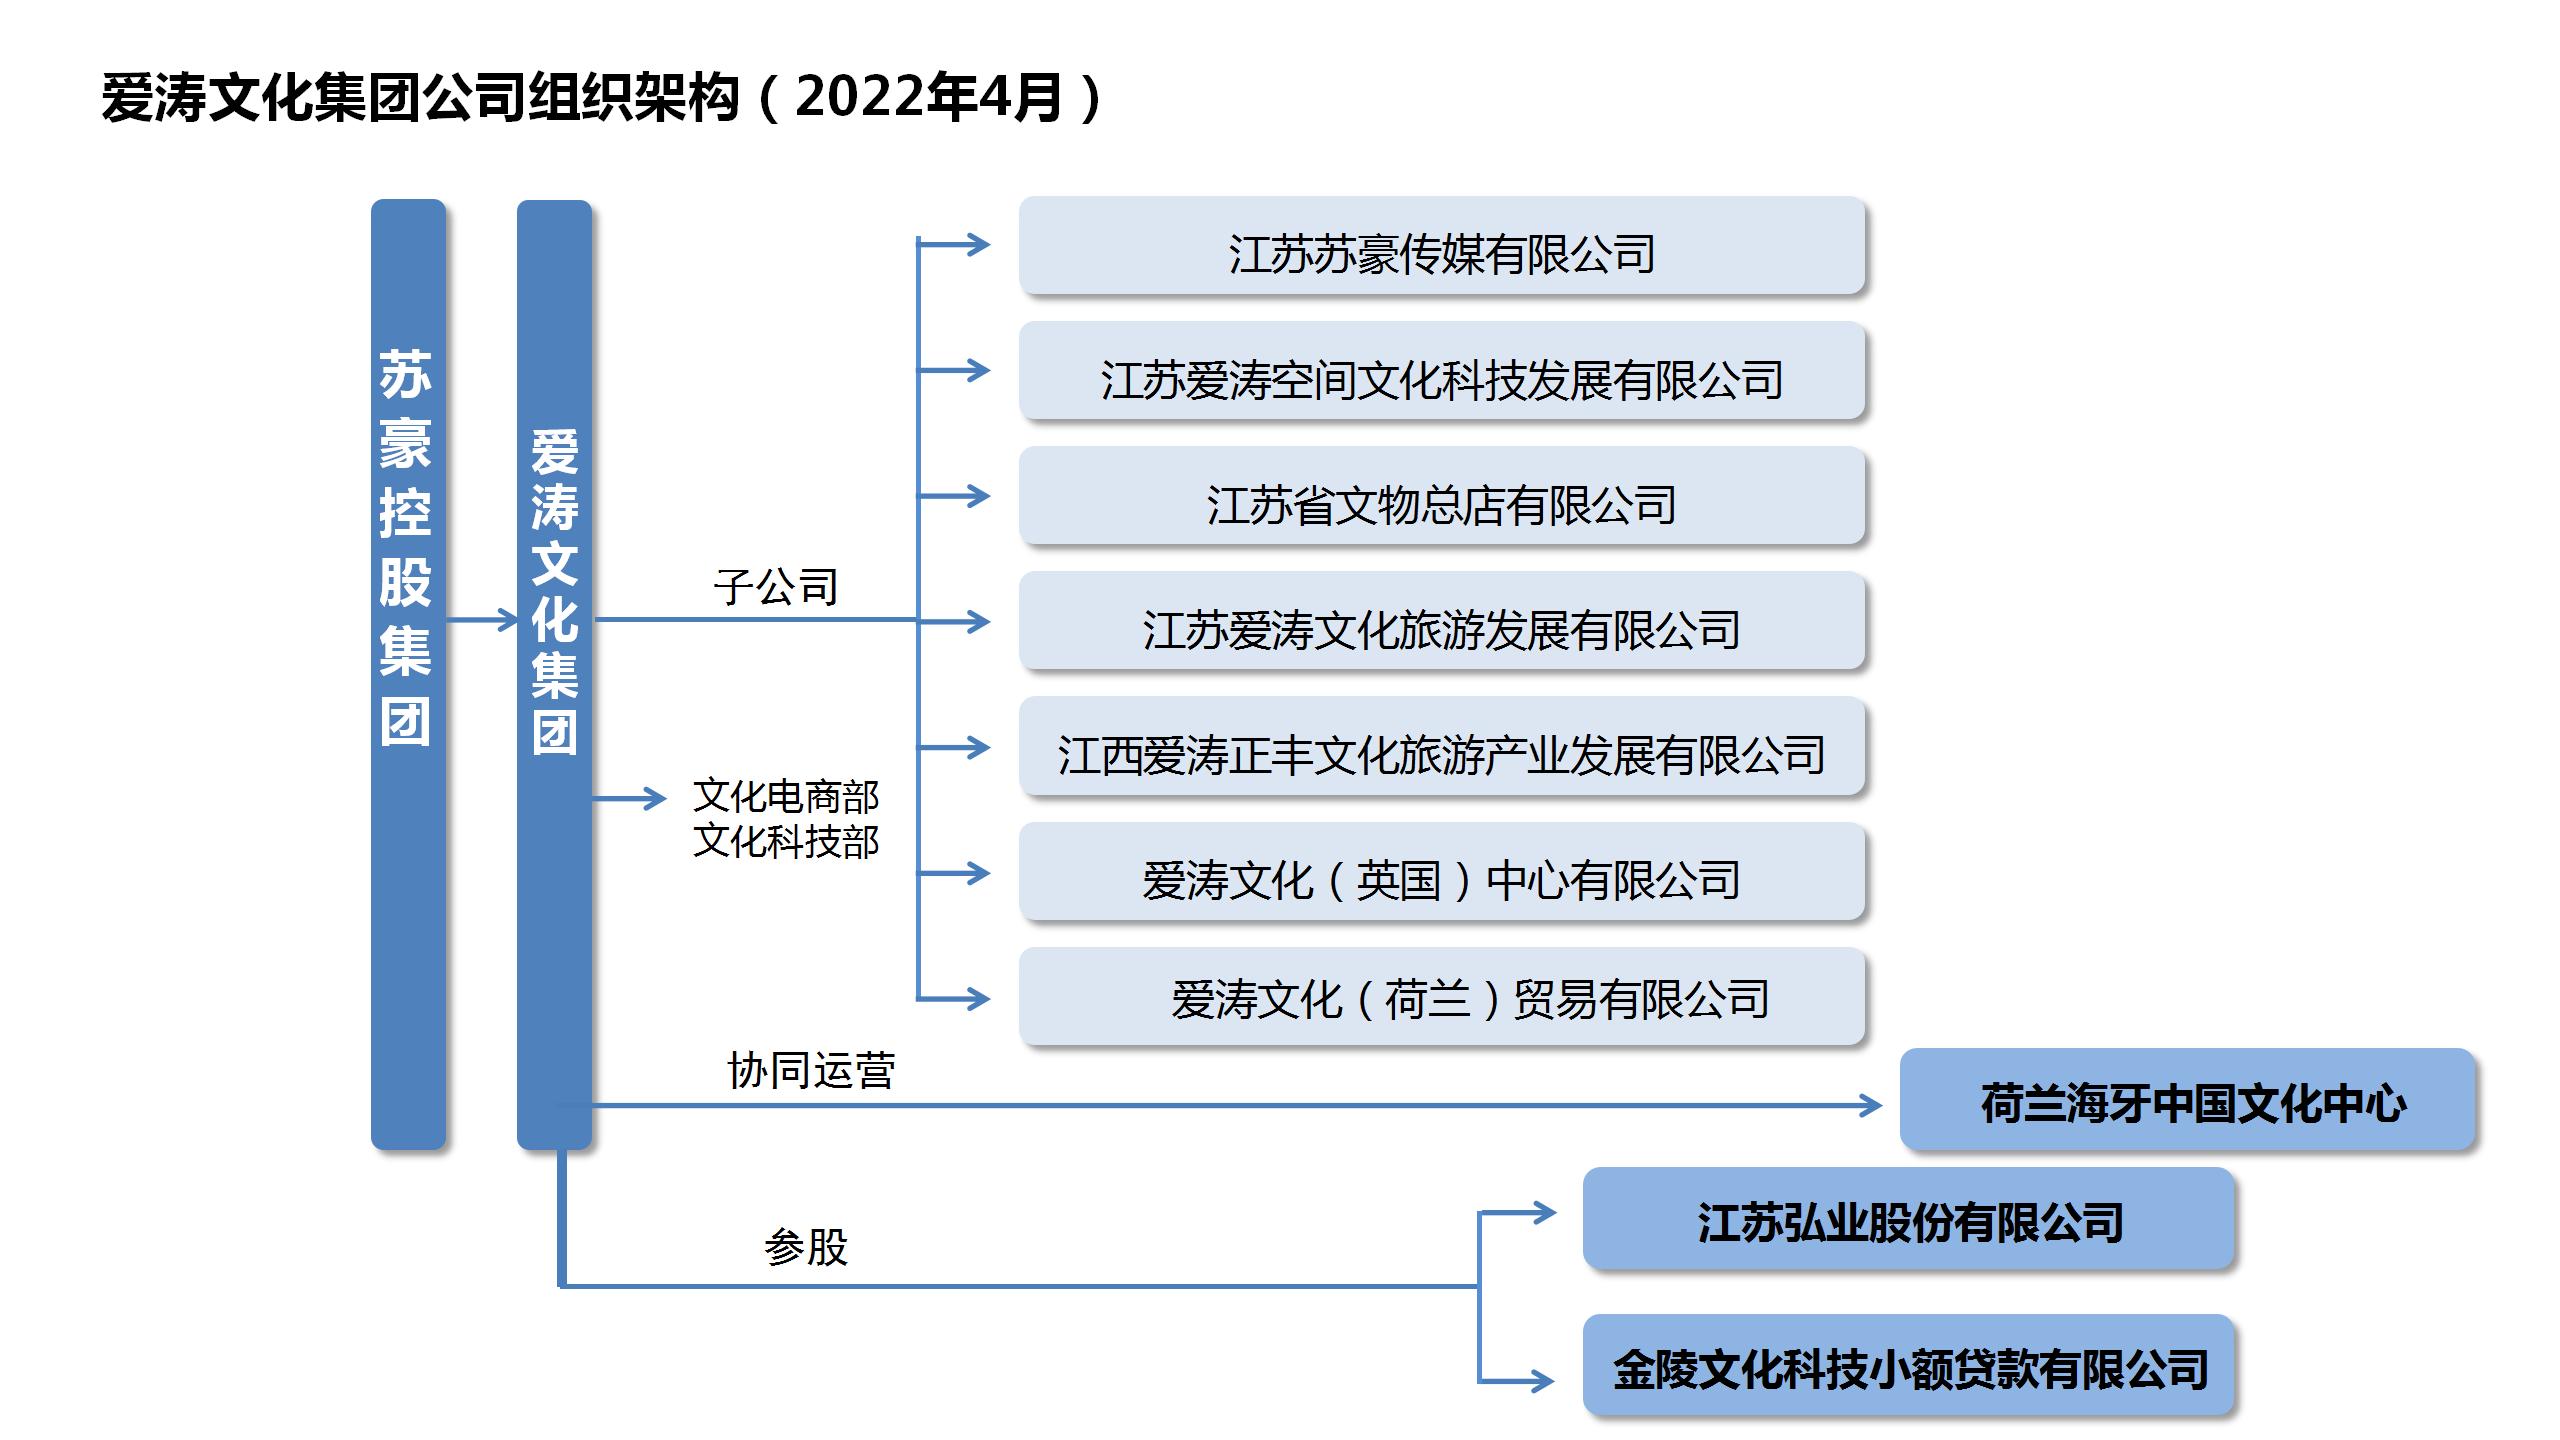 爱涛文化集团公司组织架构（2022.4.23）.jpg